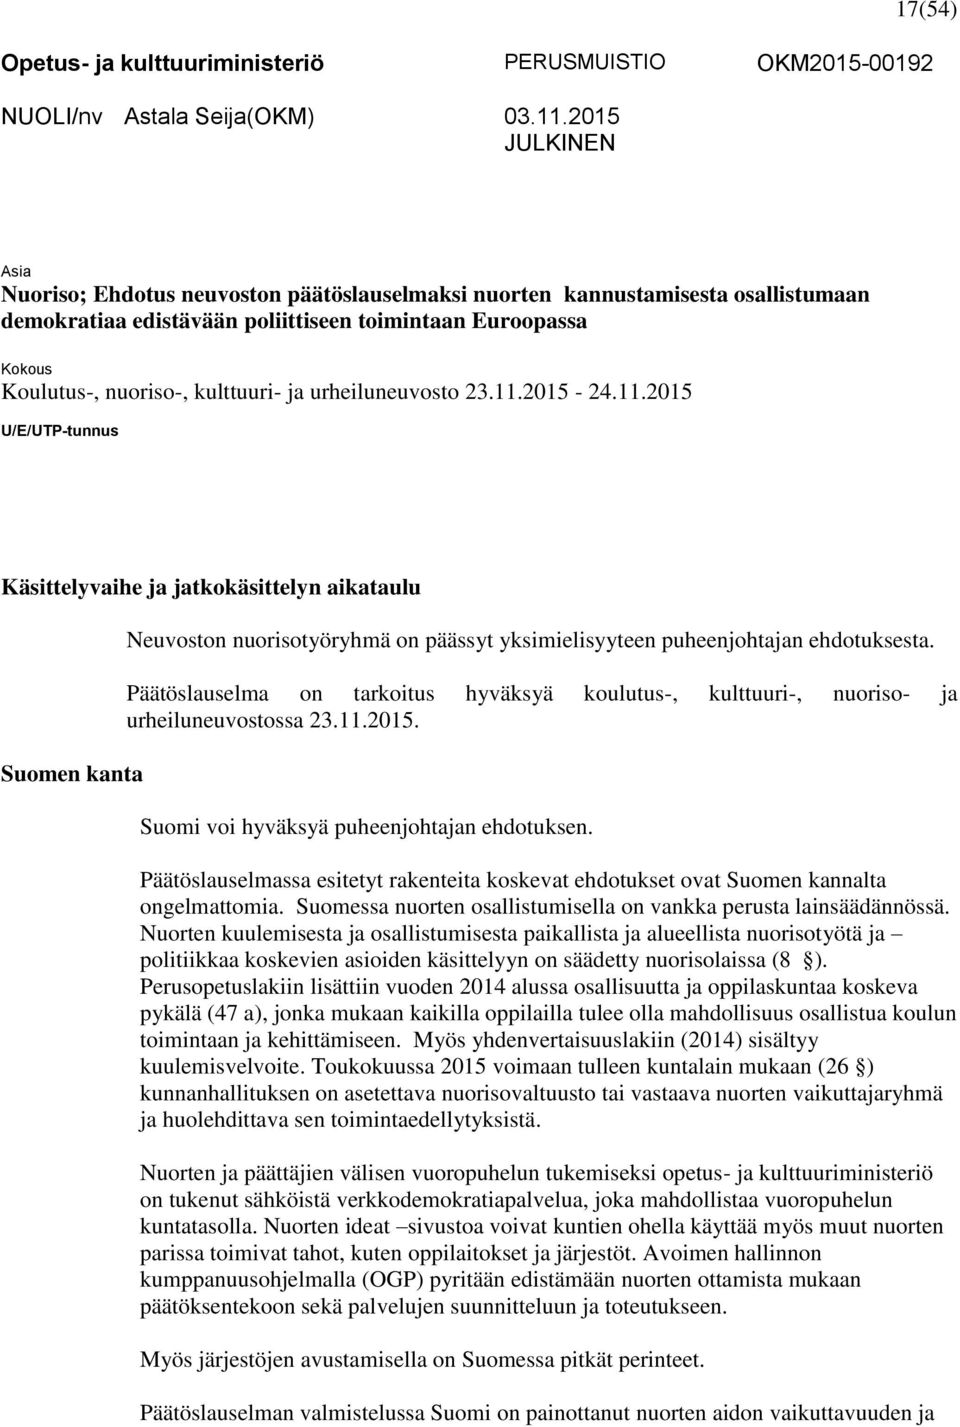 kulttuuri- ja urheiluneuvosto 23.11.2015-24.11.2015 U/E/UTP-tunnus Käsittelyvaihe ja jatkokäsittelyn aikataulu Suomen kanta Neuvoston nuorisotyöryhmä on päässyt yksimielisyyteen puheenjohtajan ehdotuksesta.